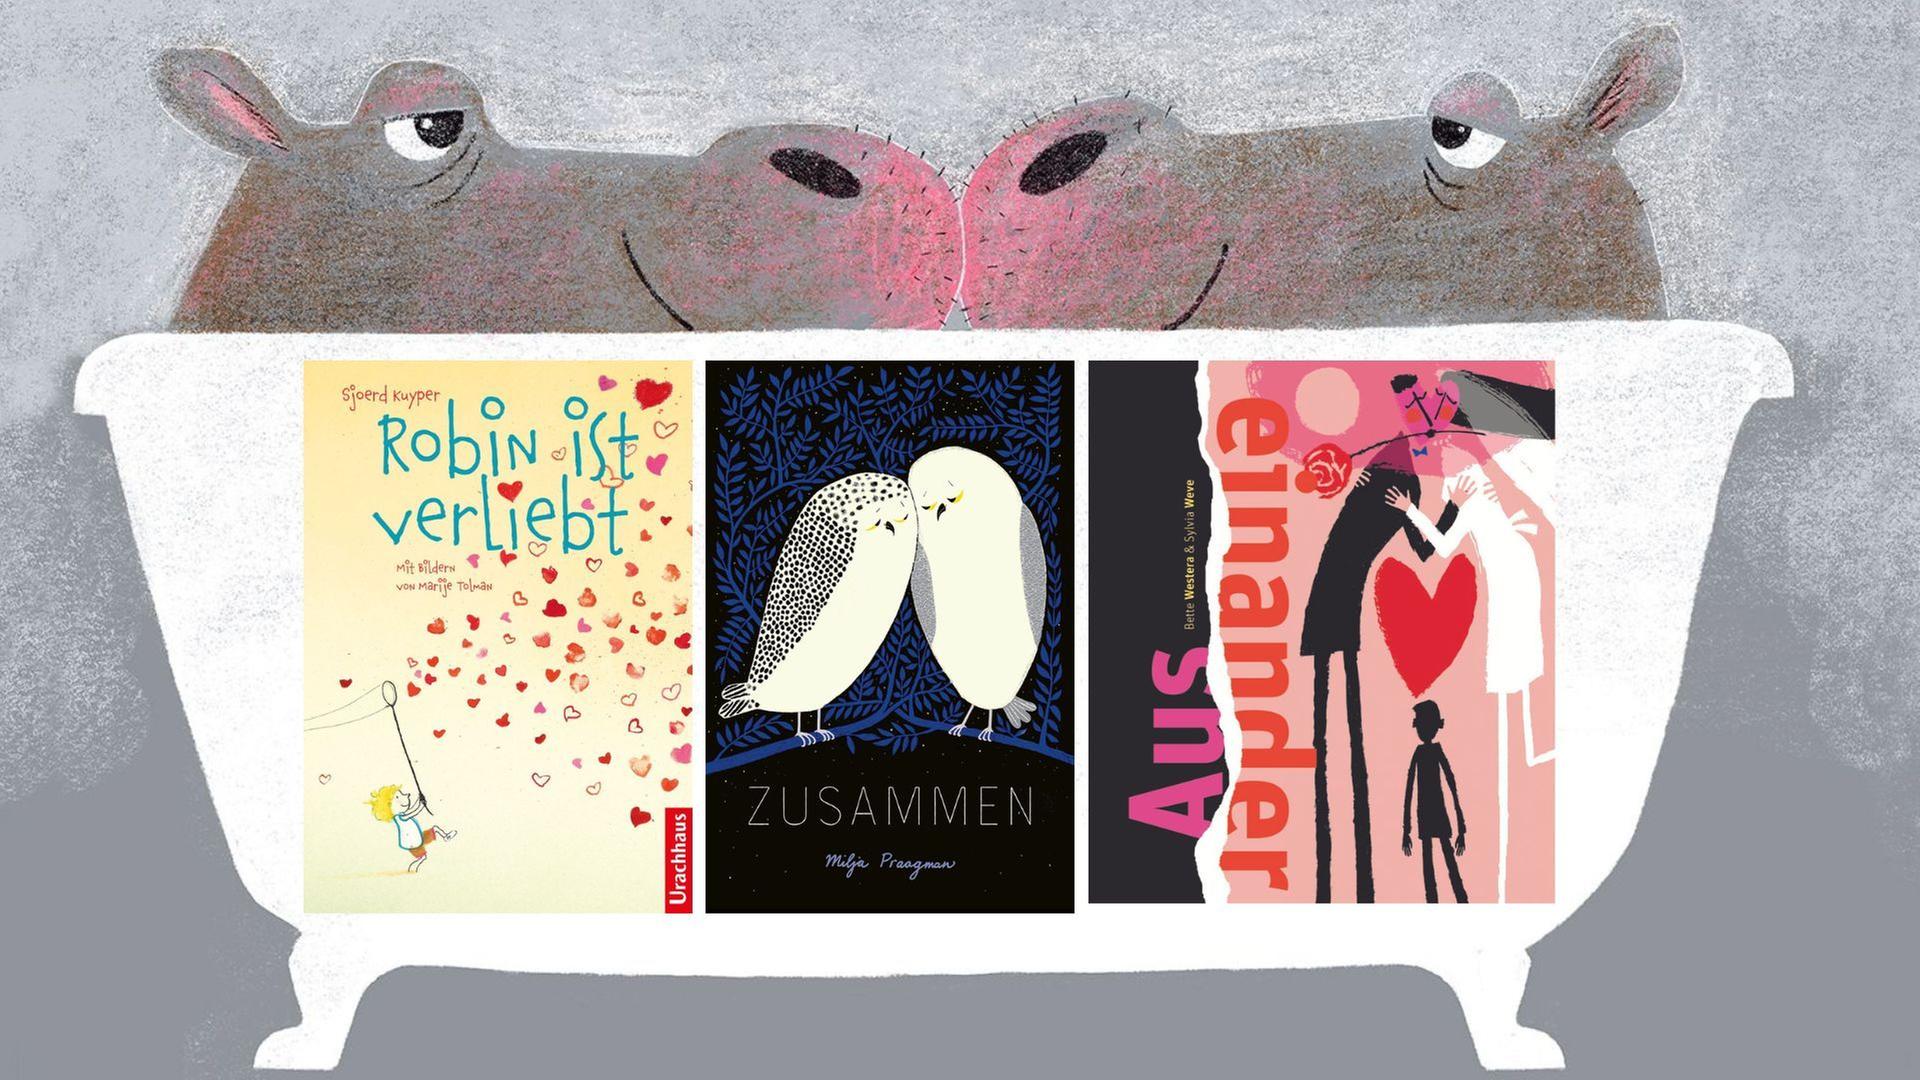 Der Kosmos, der sich Liebe nennt, in aktuellen niederländischen Kinderbüchern: Sjoerd Kuyper „Robin ist verliebt“, Milja Praagman „Zusammen“, Bette Westera und Sylvia Weve  „Auseinander“